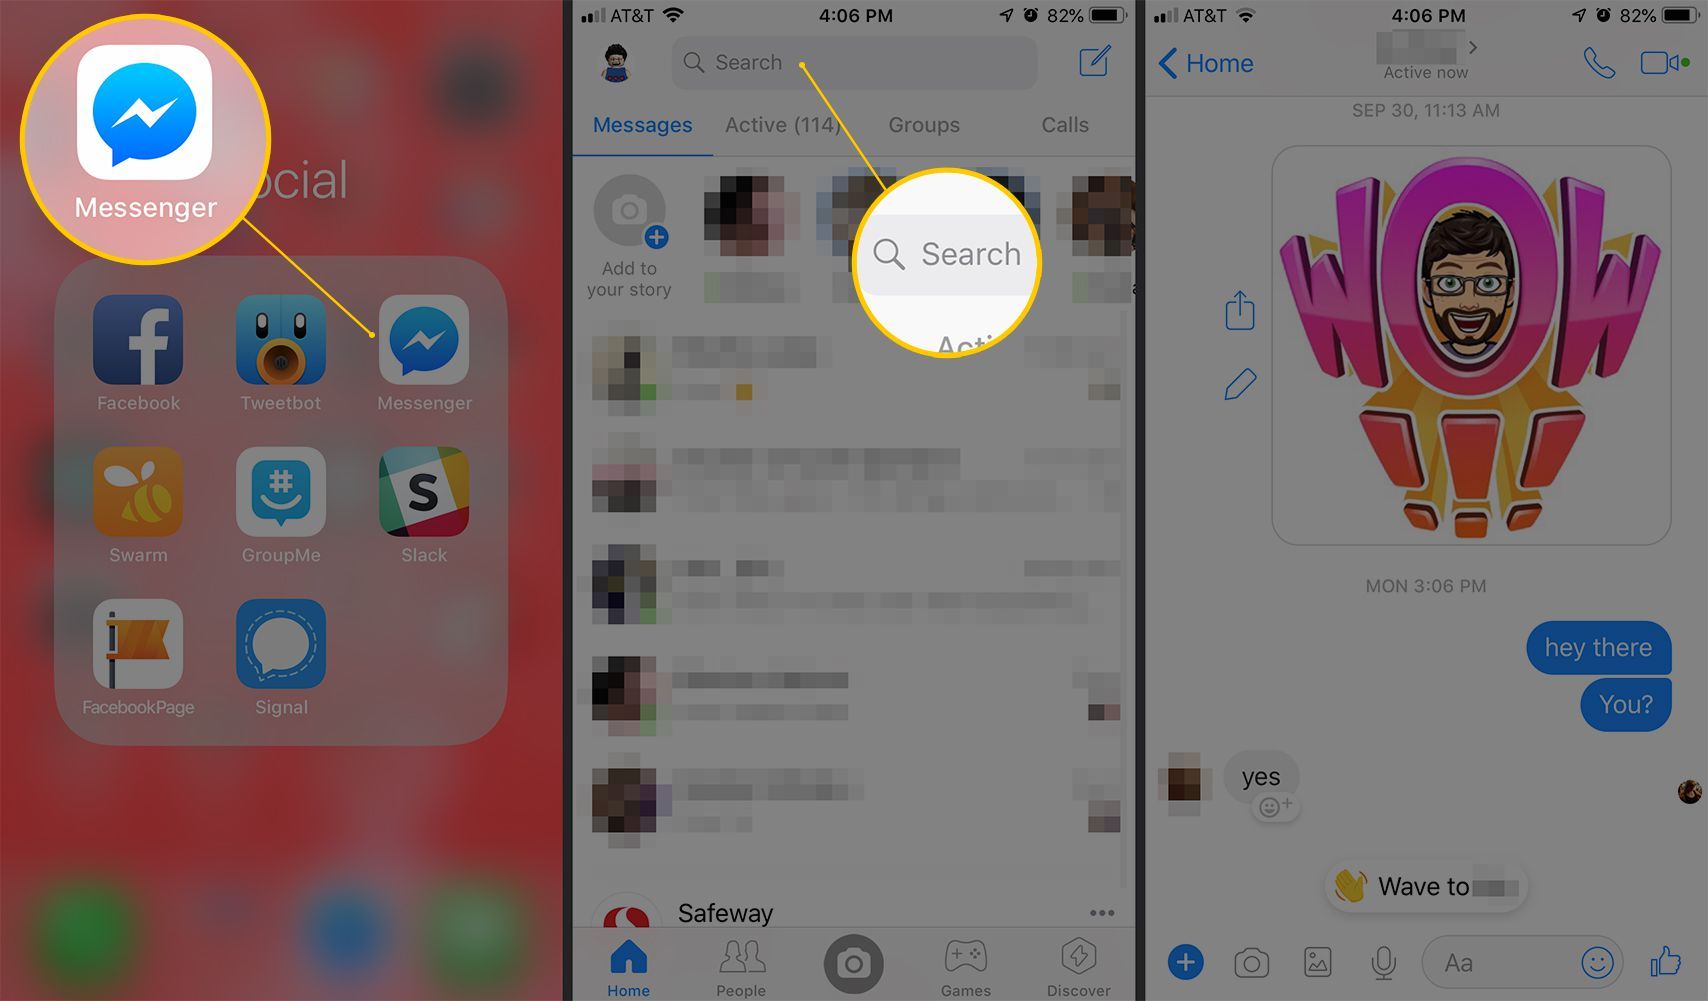 Три экрана iOS с приложением Messenger, панелью поиска и интерфейсом сообщений с искомым человеком